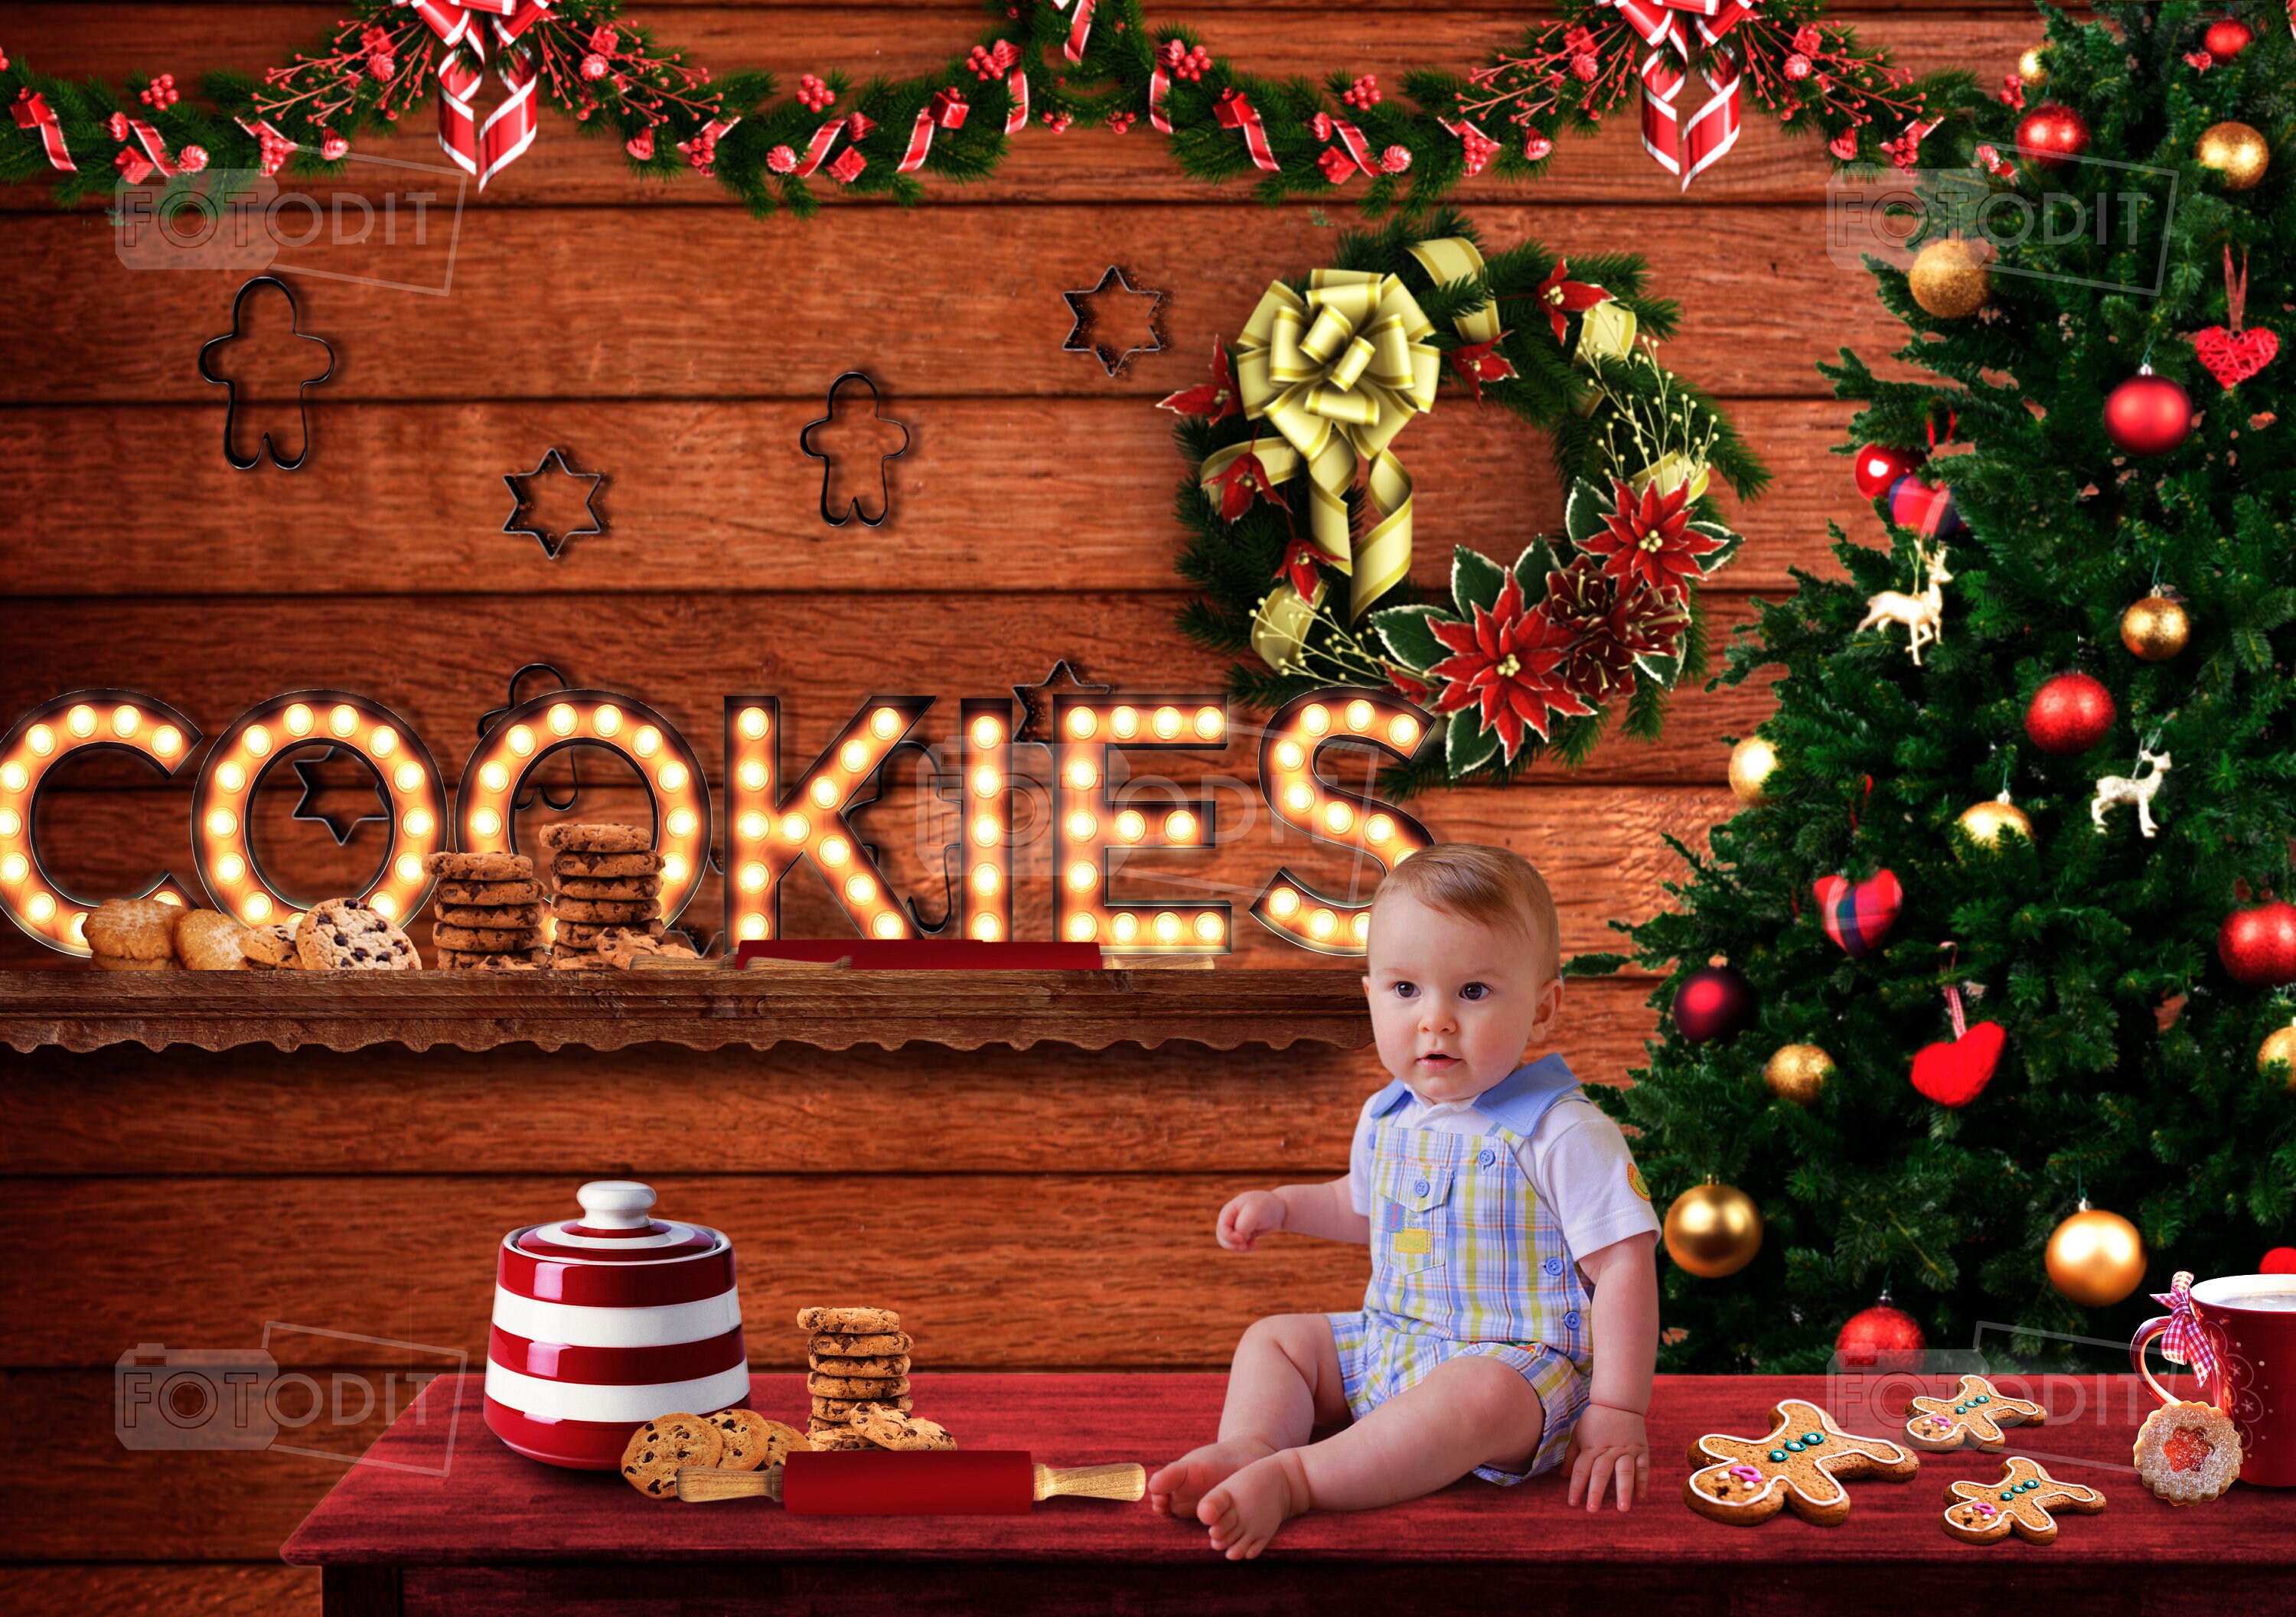 Christmas Cookies Pan Christmas Digital Background for Kids on Cookie Pan -  Christmas Card - Christmas Cookie - Christmas Digital Background